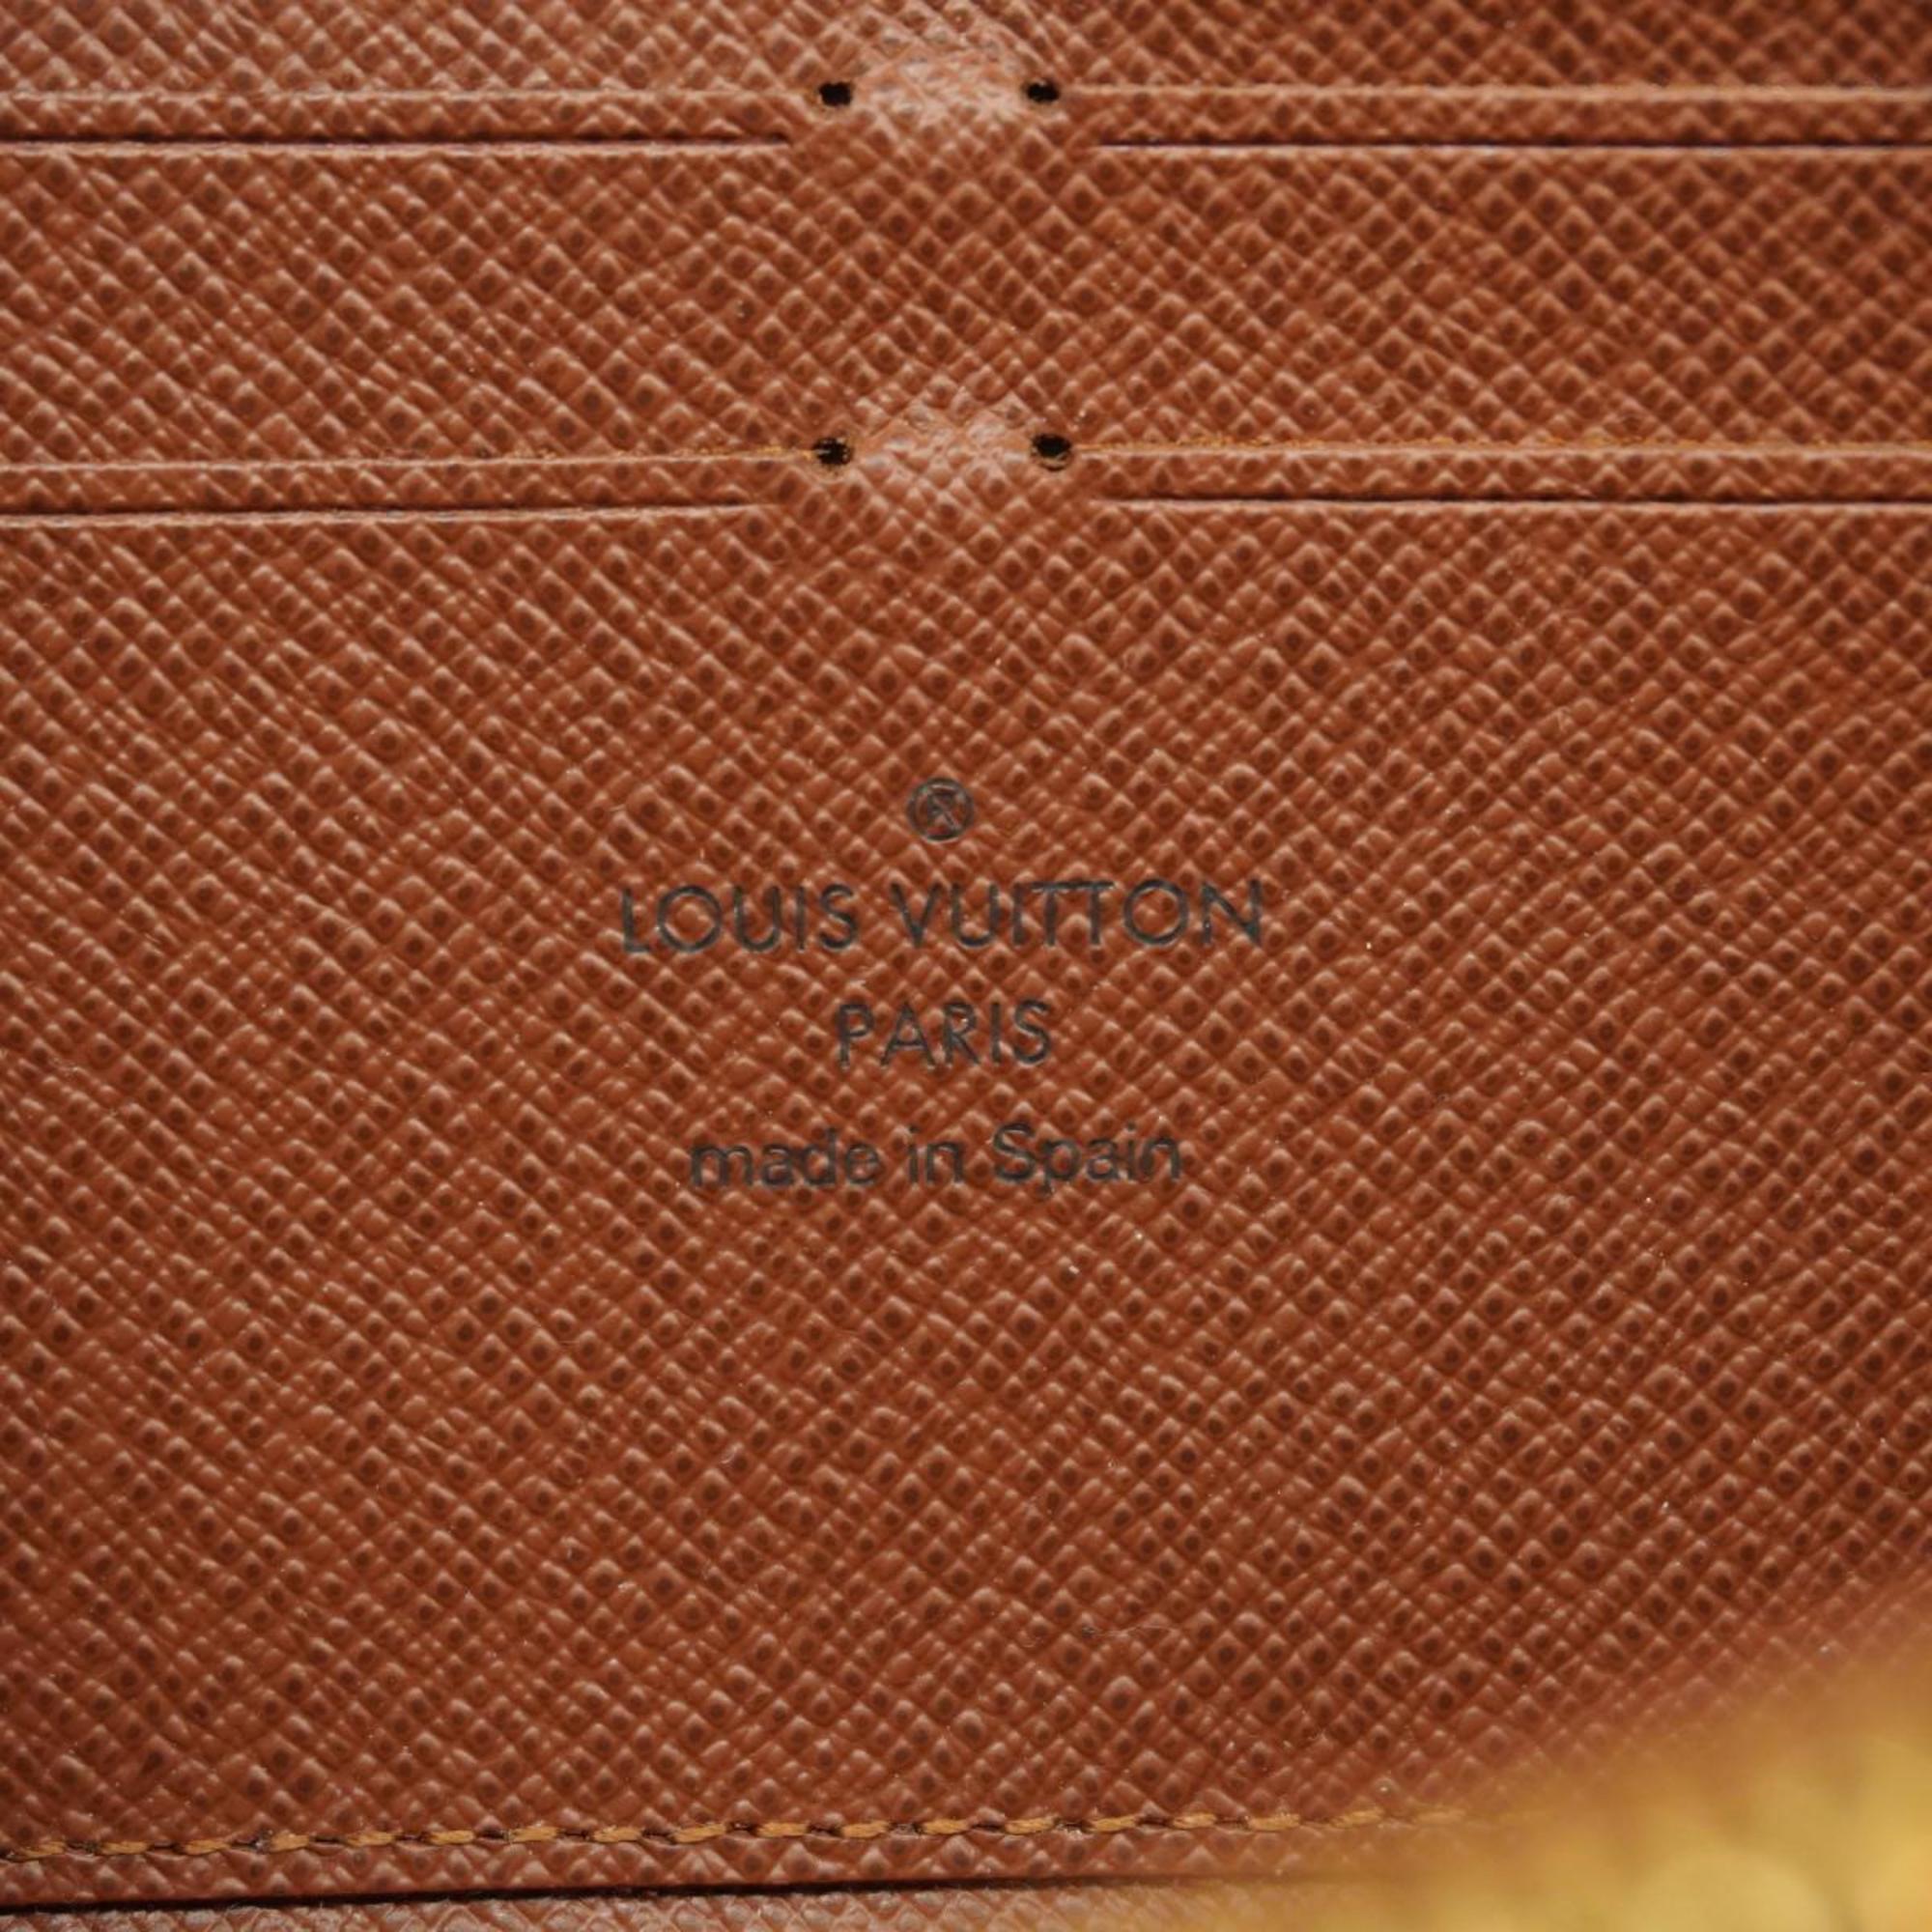 ルイ・ヴィトン(Louis Vuitton) ルイ・ヴィトン 長財布 モノグラム ジッピーウォレット M60017 ブラウンメンズ レディース